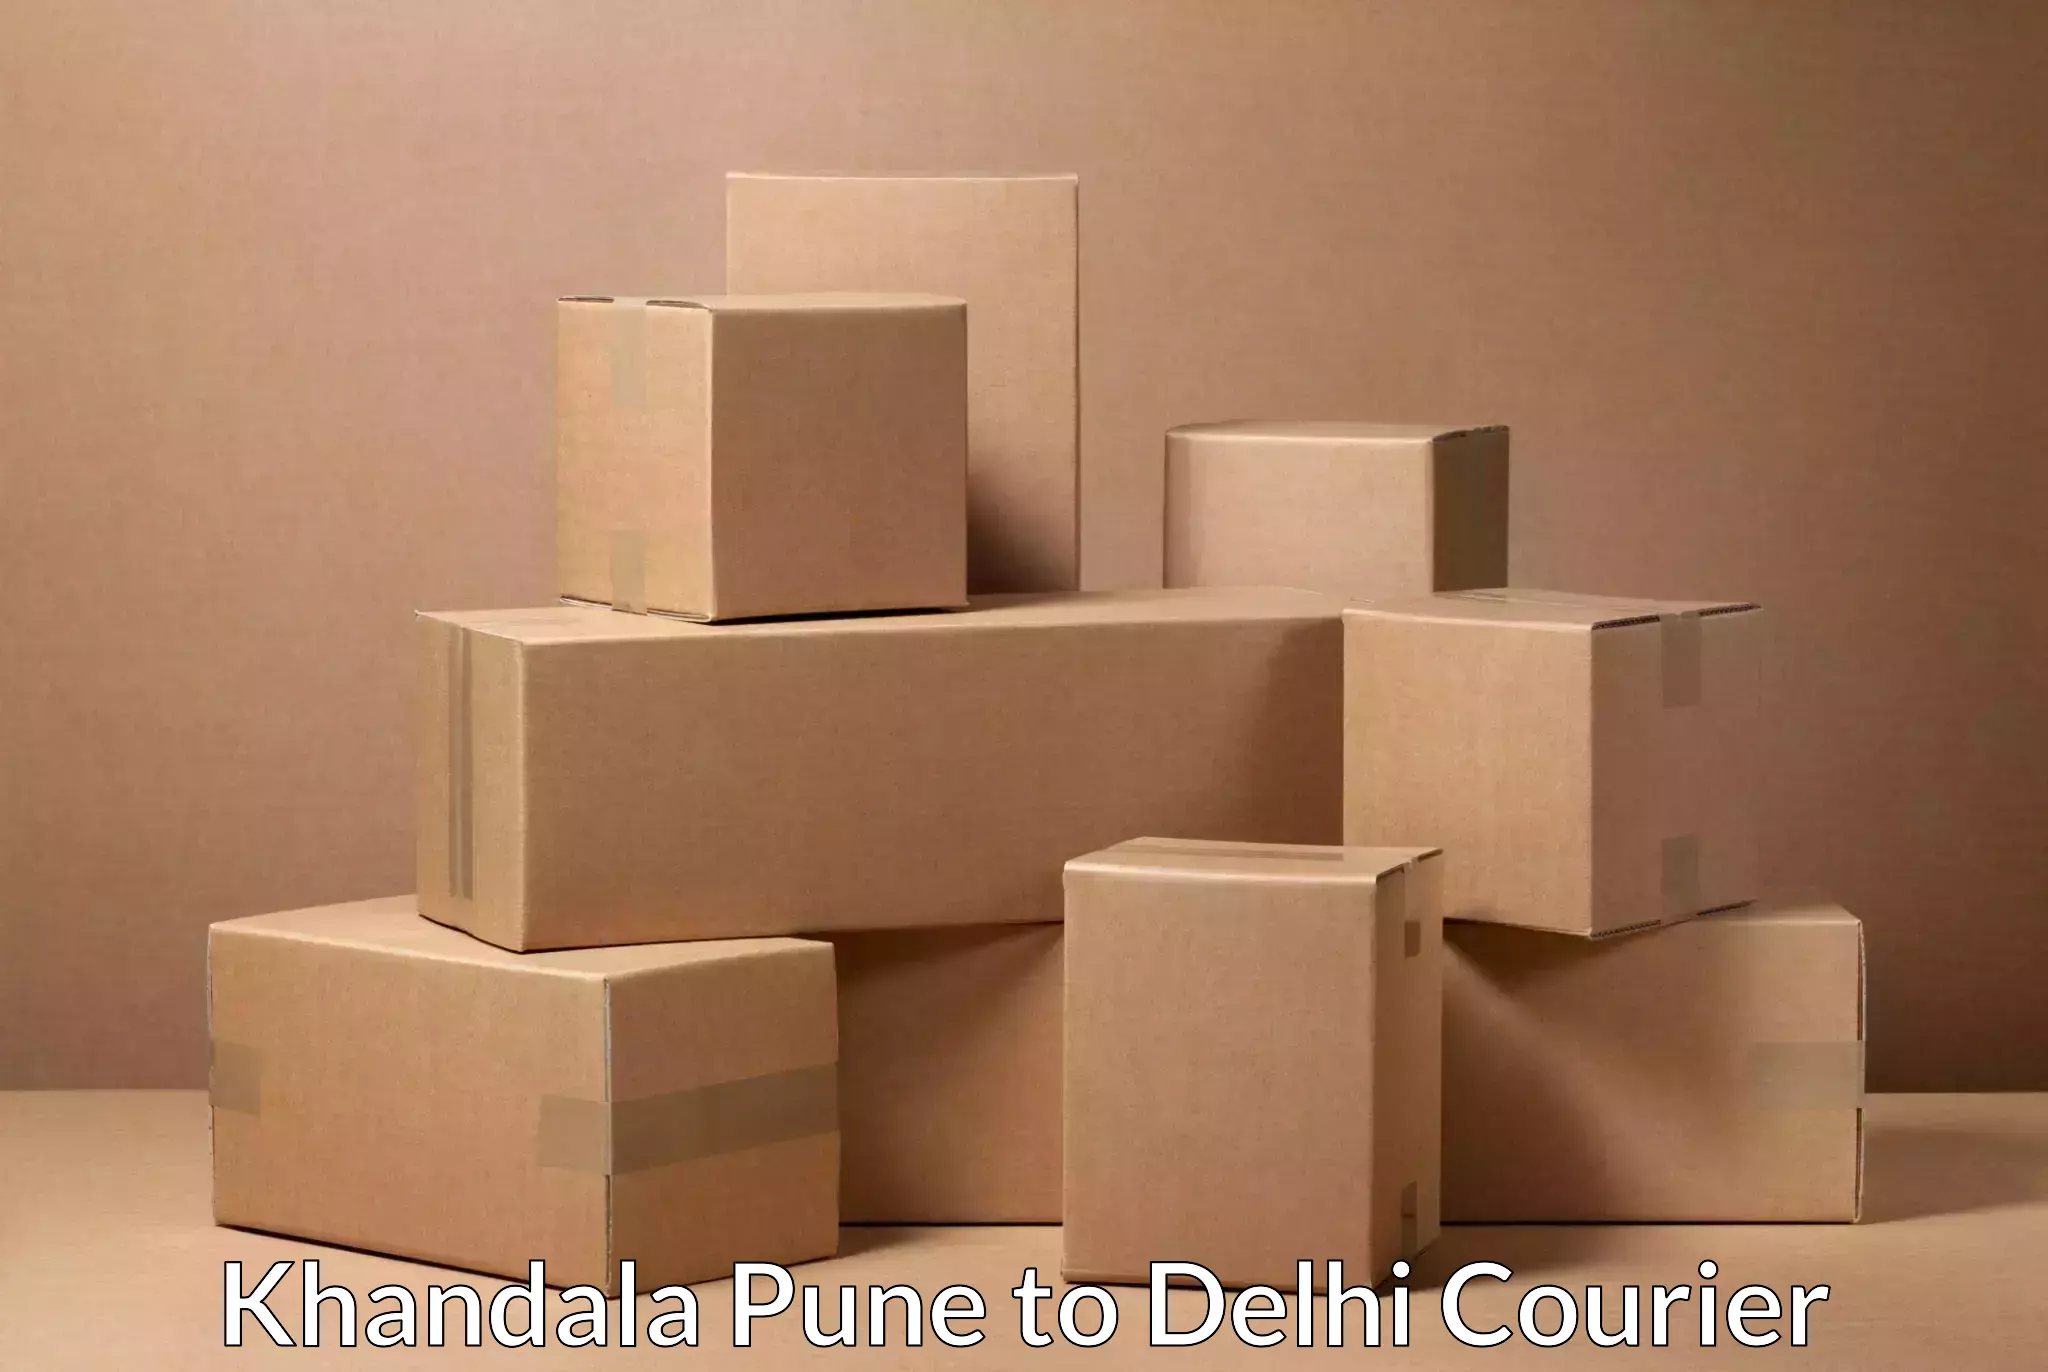 Effective logistics strategies in Khandala Pune to East Delhi